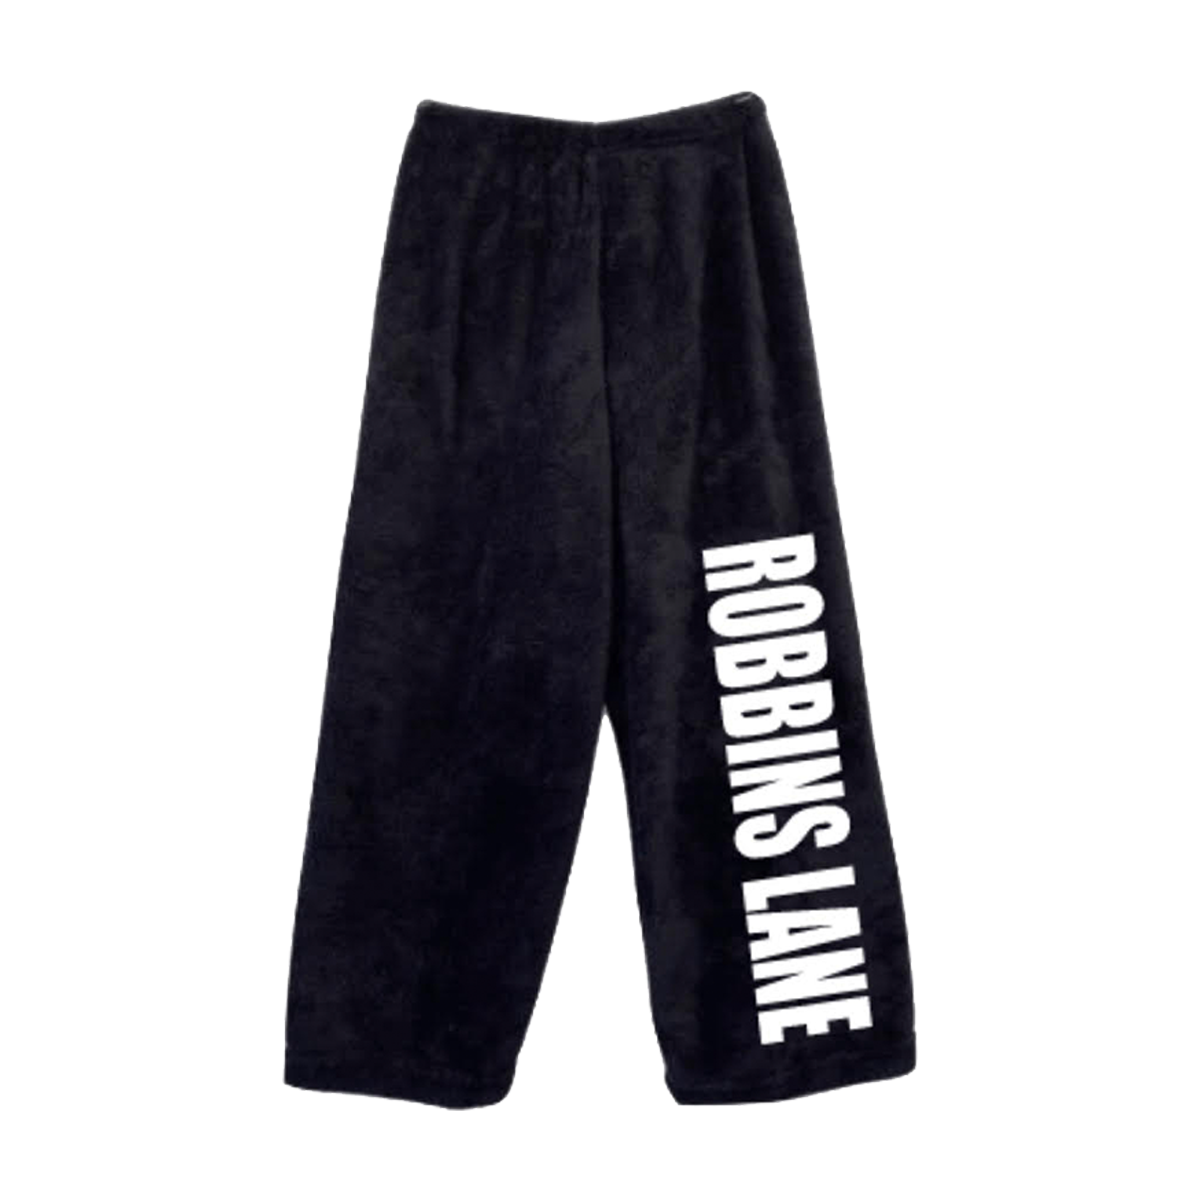 Robbins Lane Fuzzy Black PJ Pants